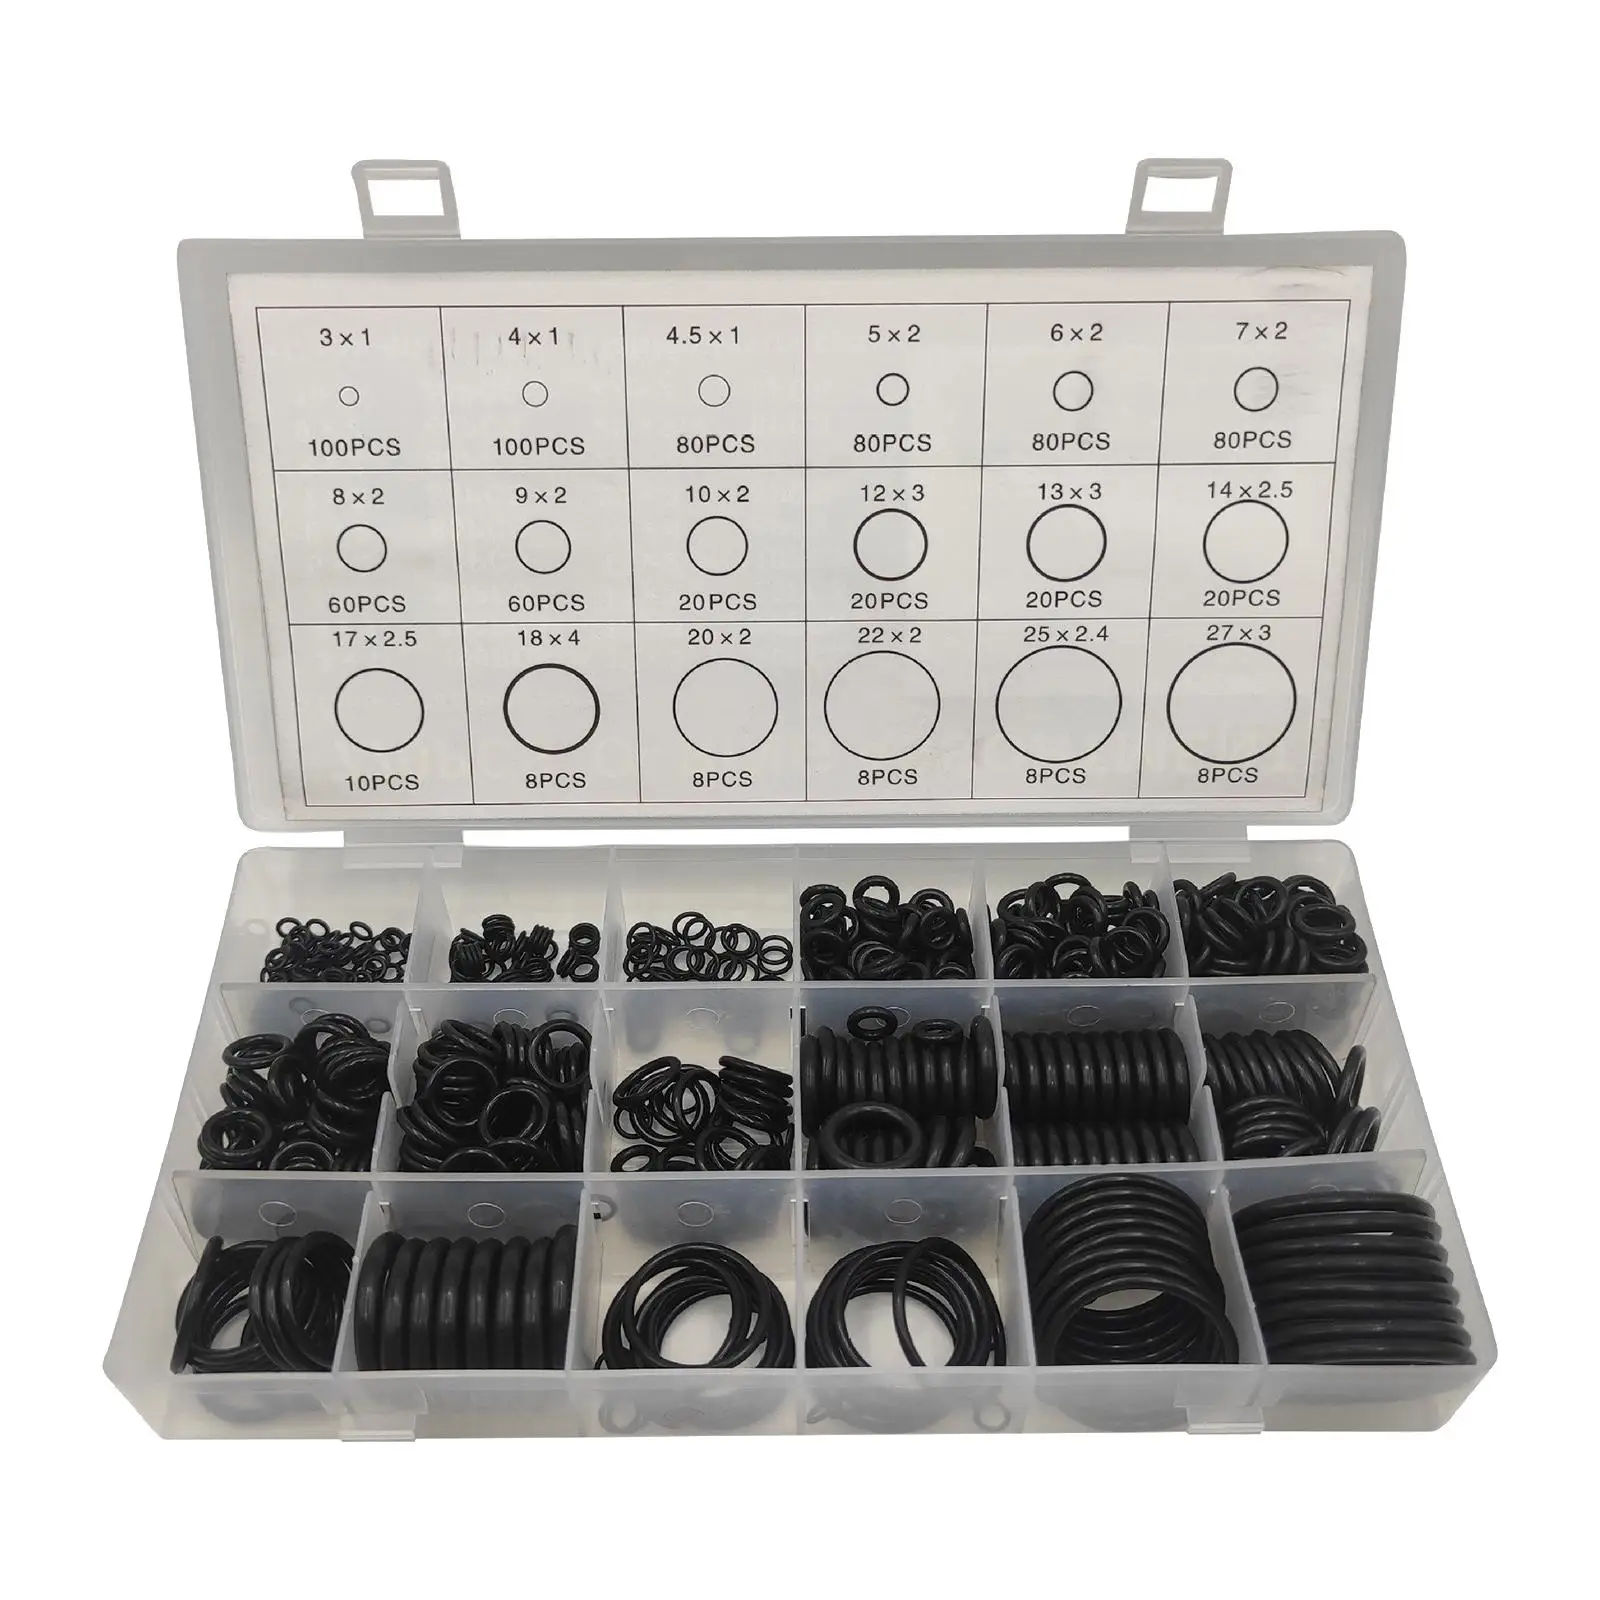 770 O Ring Gasket Kit Black Sealing Gasket Washers for Mechanic Repairs